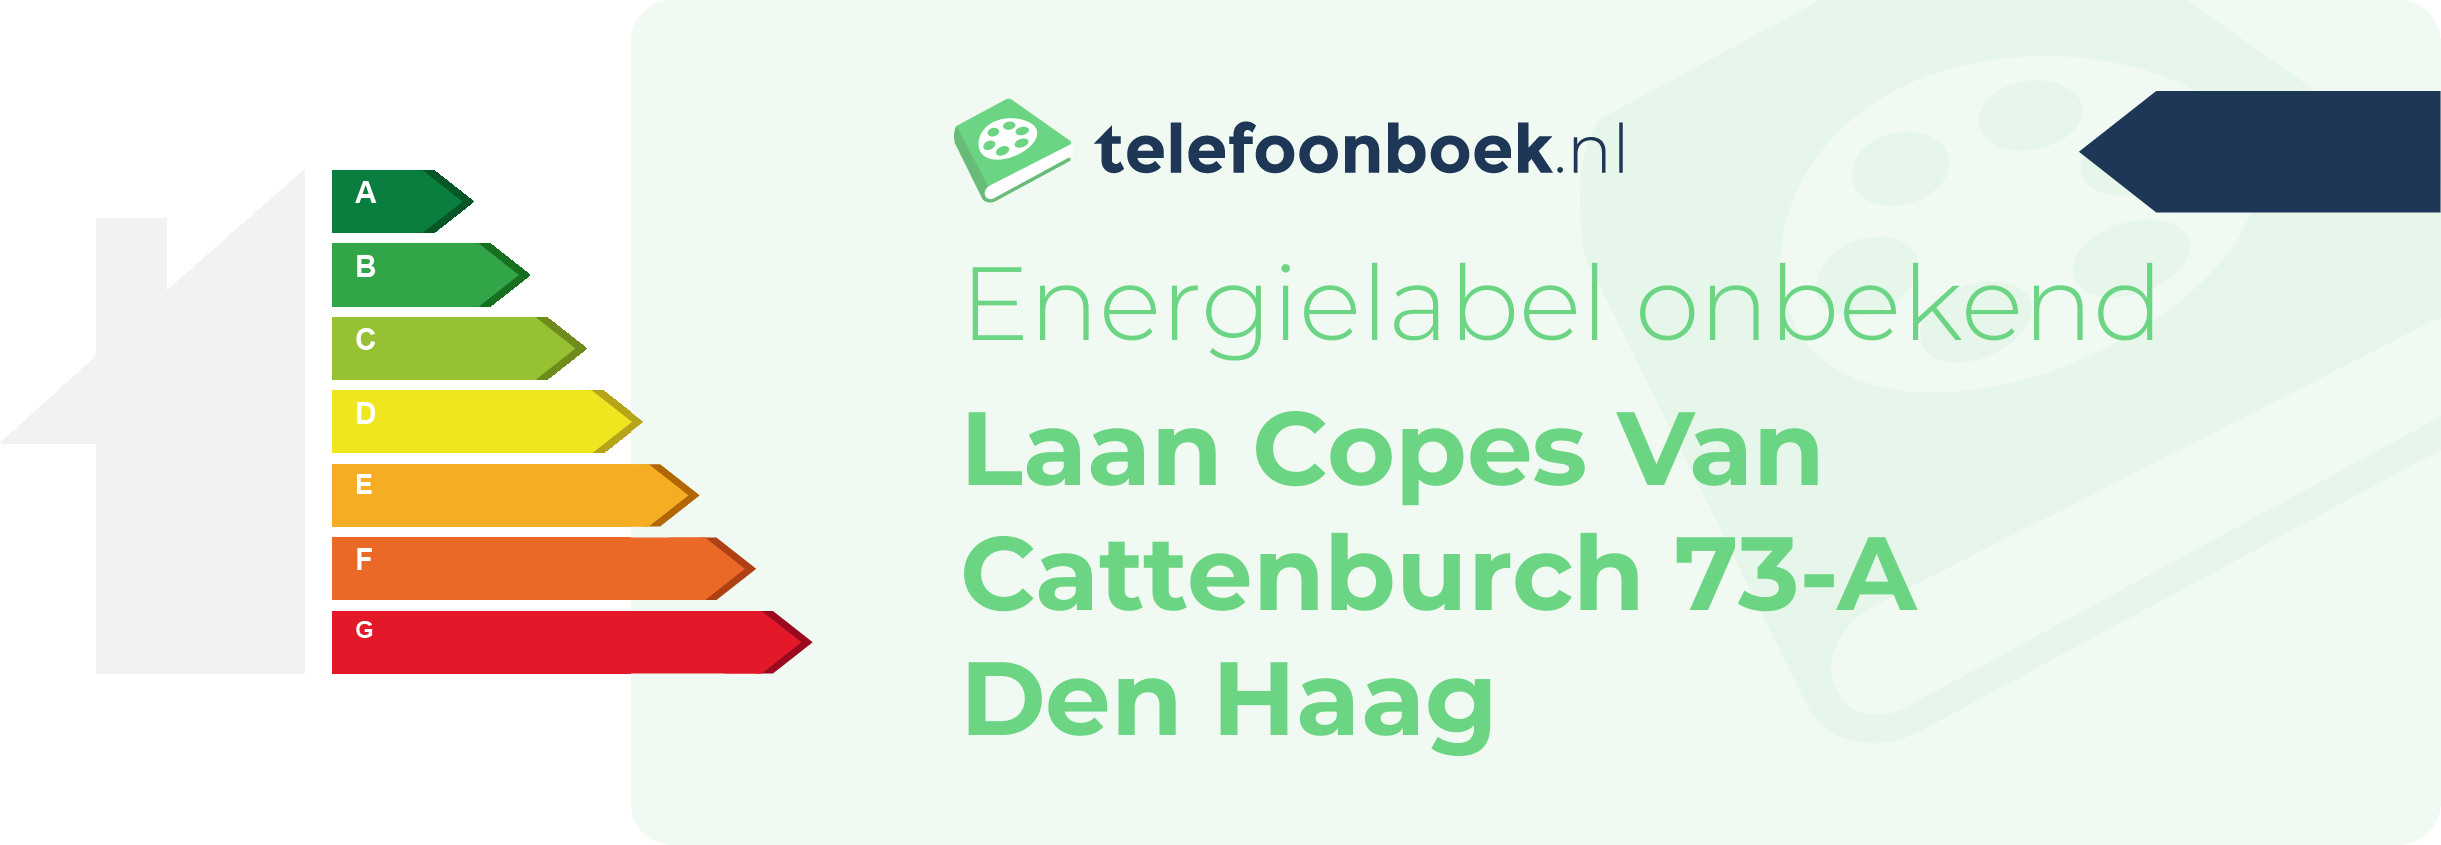 Energielabel Laan Copes Van Cattenburch 73-A Den Haag